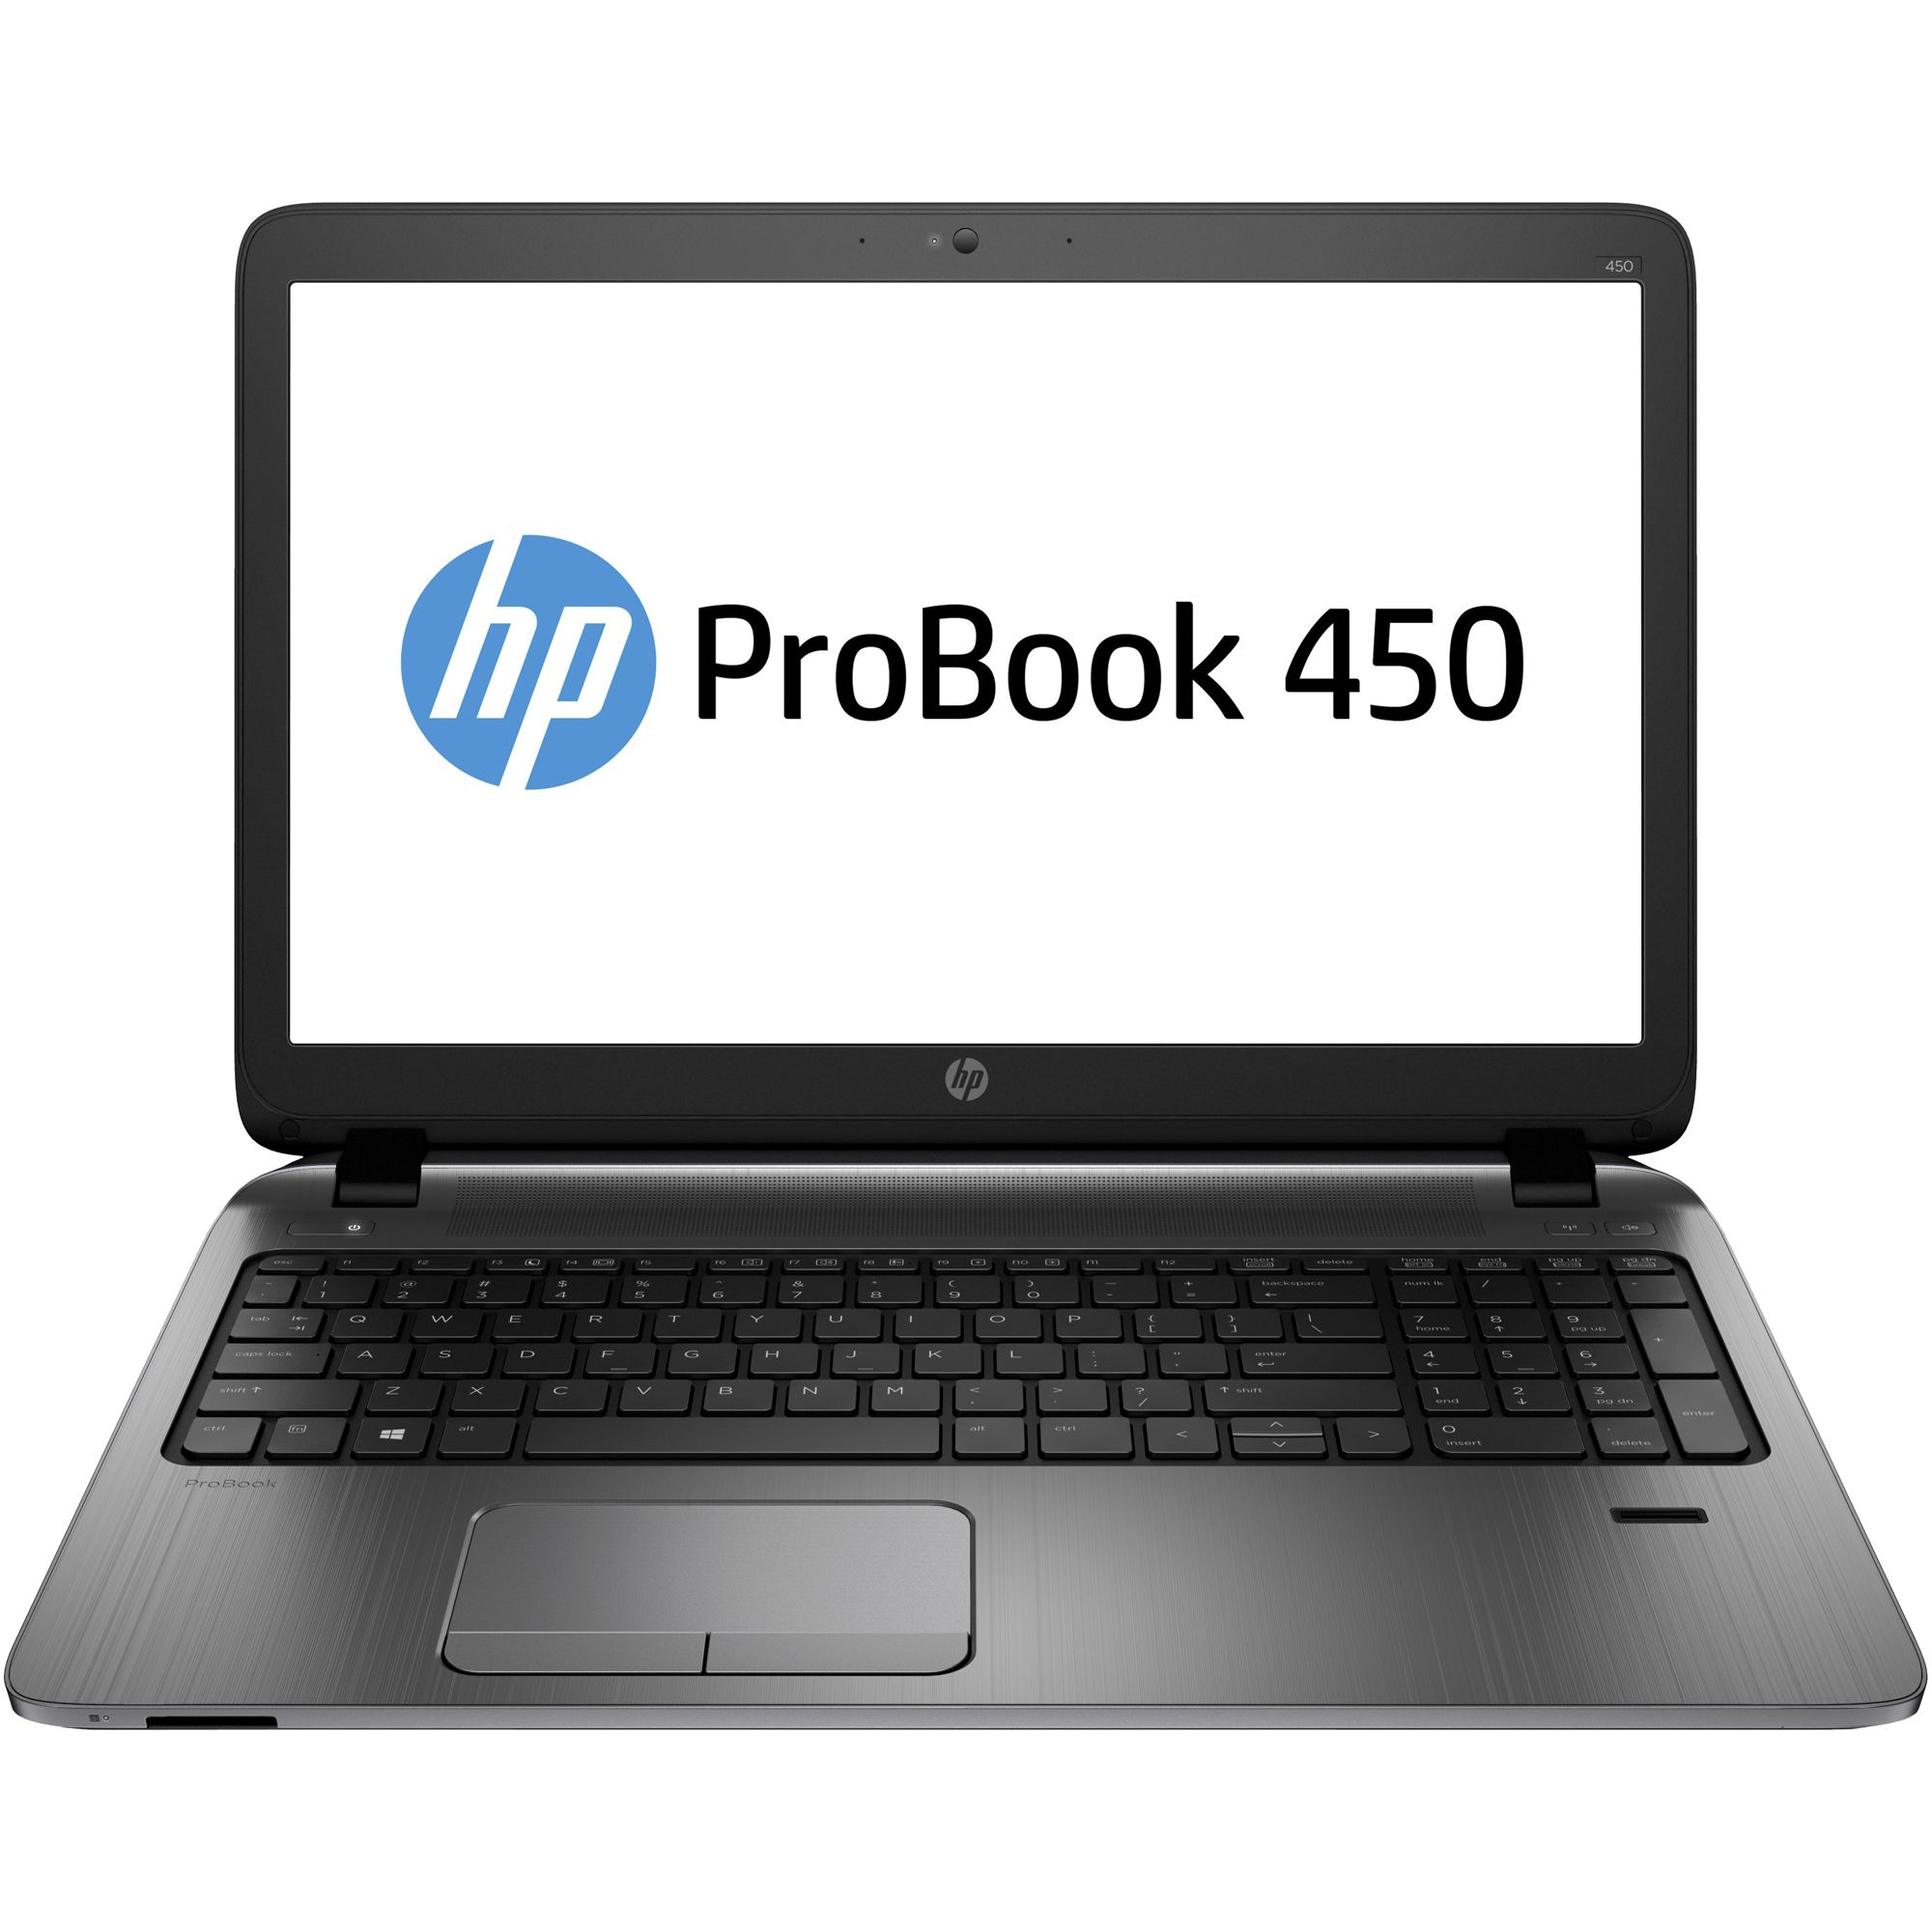 Laptop HP ProBook 450 G2, Intel Core i3-5010U, 4GB DDR3, HDD 500GB, AMD Radeon R5 m225 1GB, Free DOS